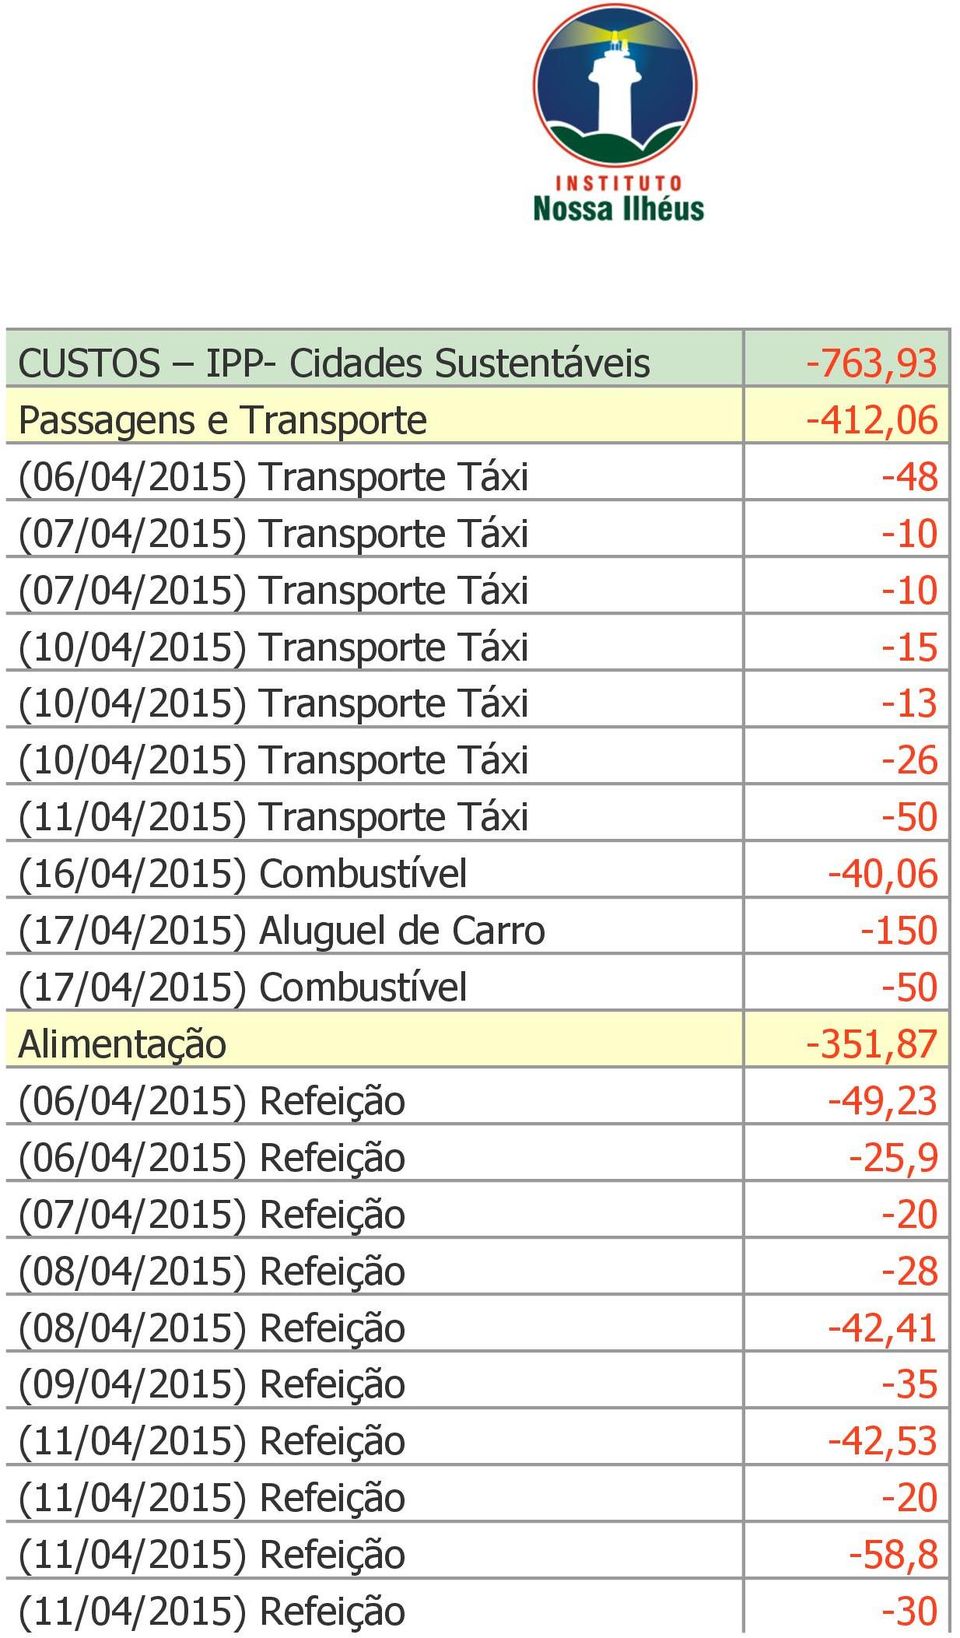 (17/04/2015) Aluguel de Carro -150 (17/04/2015) Combustível -50 Alimentação -351,87 (06/04/2015) Refeição -49,23 (06/04/2015) Refeição -25,9 (07/04/2015) Refeição -20